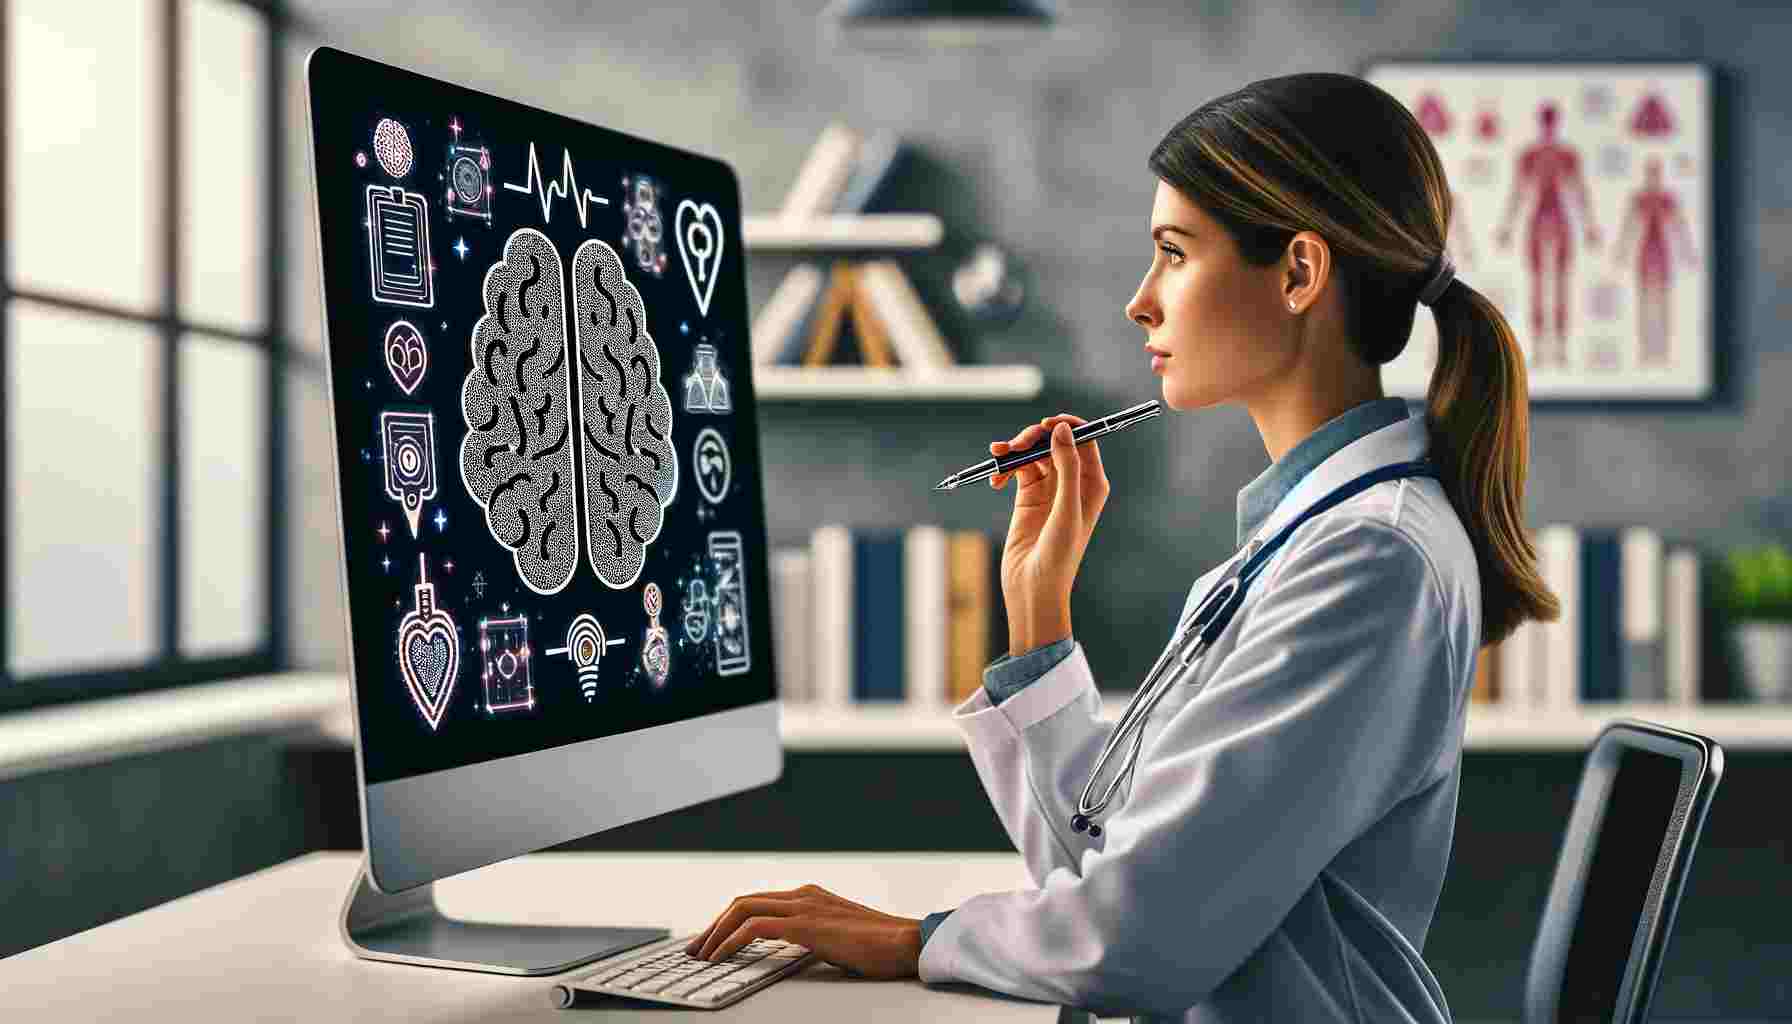  Choisir le bon outil d'écriture IA pour des fins médicales 